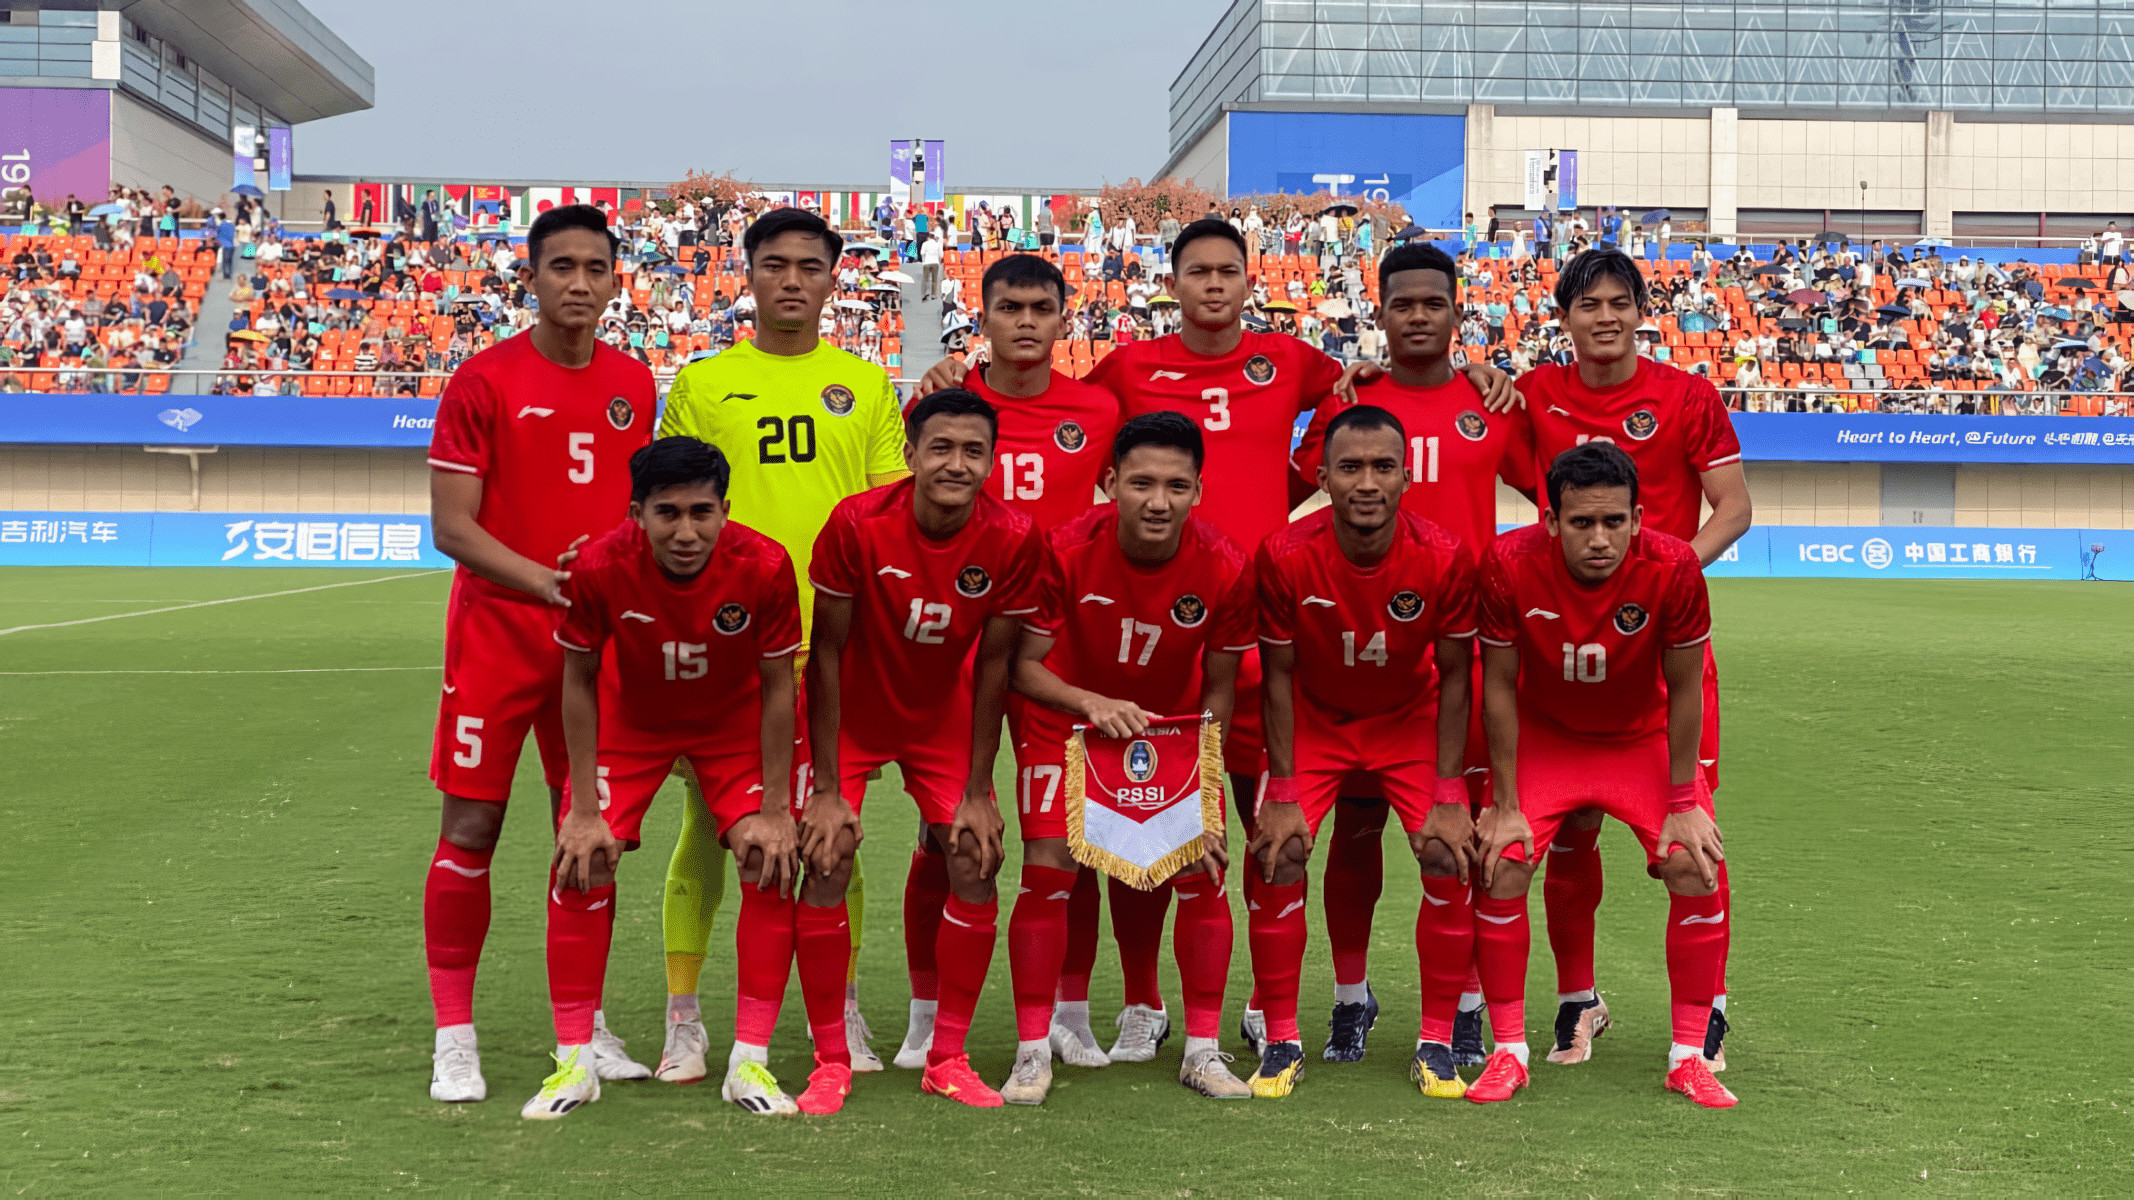 Timnas U-24 Indonesia vs Uzbekistan: Motivasi Tinggi Menyelimuti Garuda Muda - JPNN.com